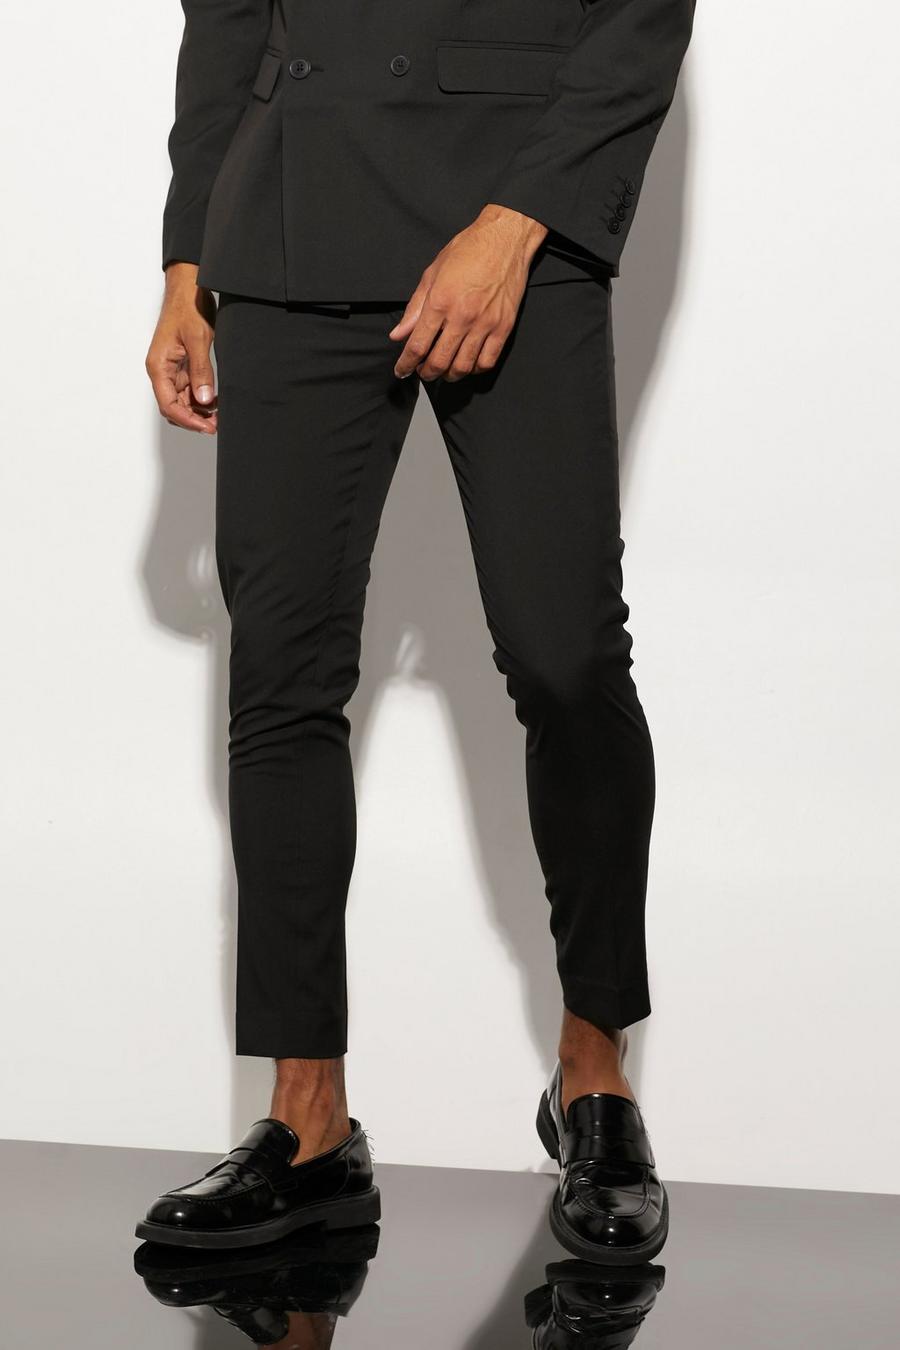 Pantaloni completo Super Skinny Fit, Black negro